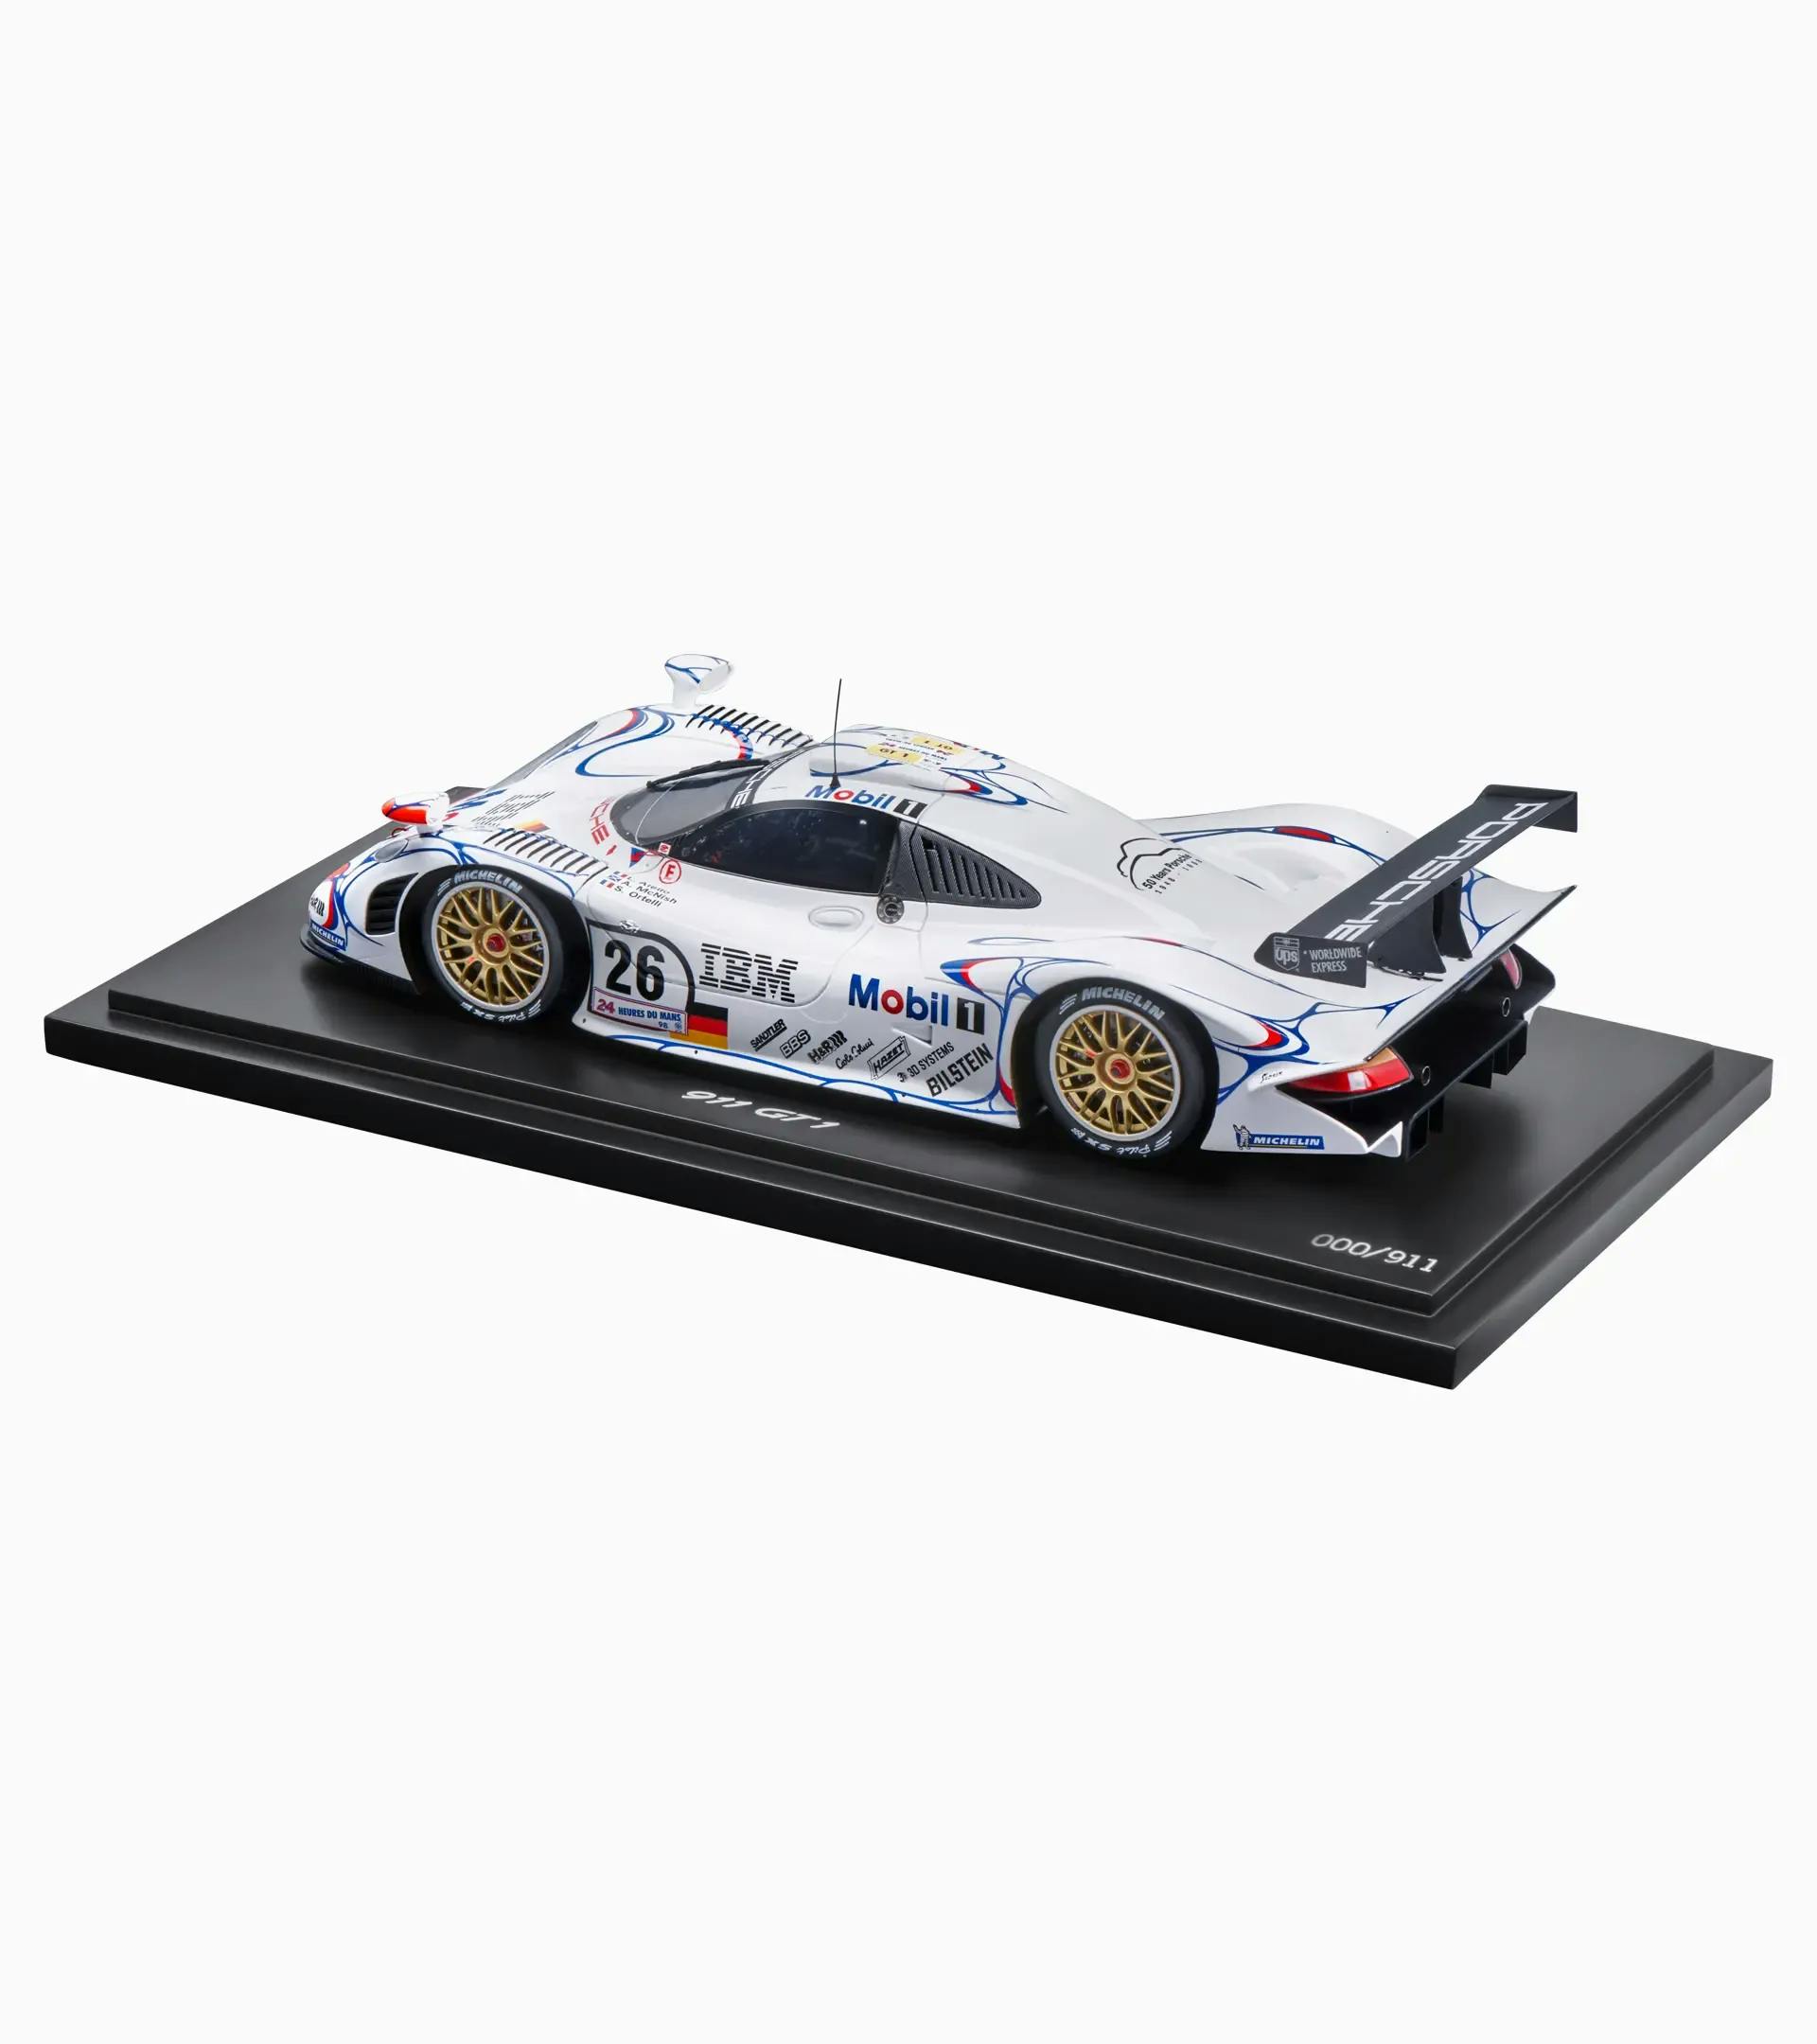 Porsche 911 GT1’98 victorieuse aux 24 Heures du Mans 1998 – Édition limitée 2